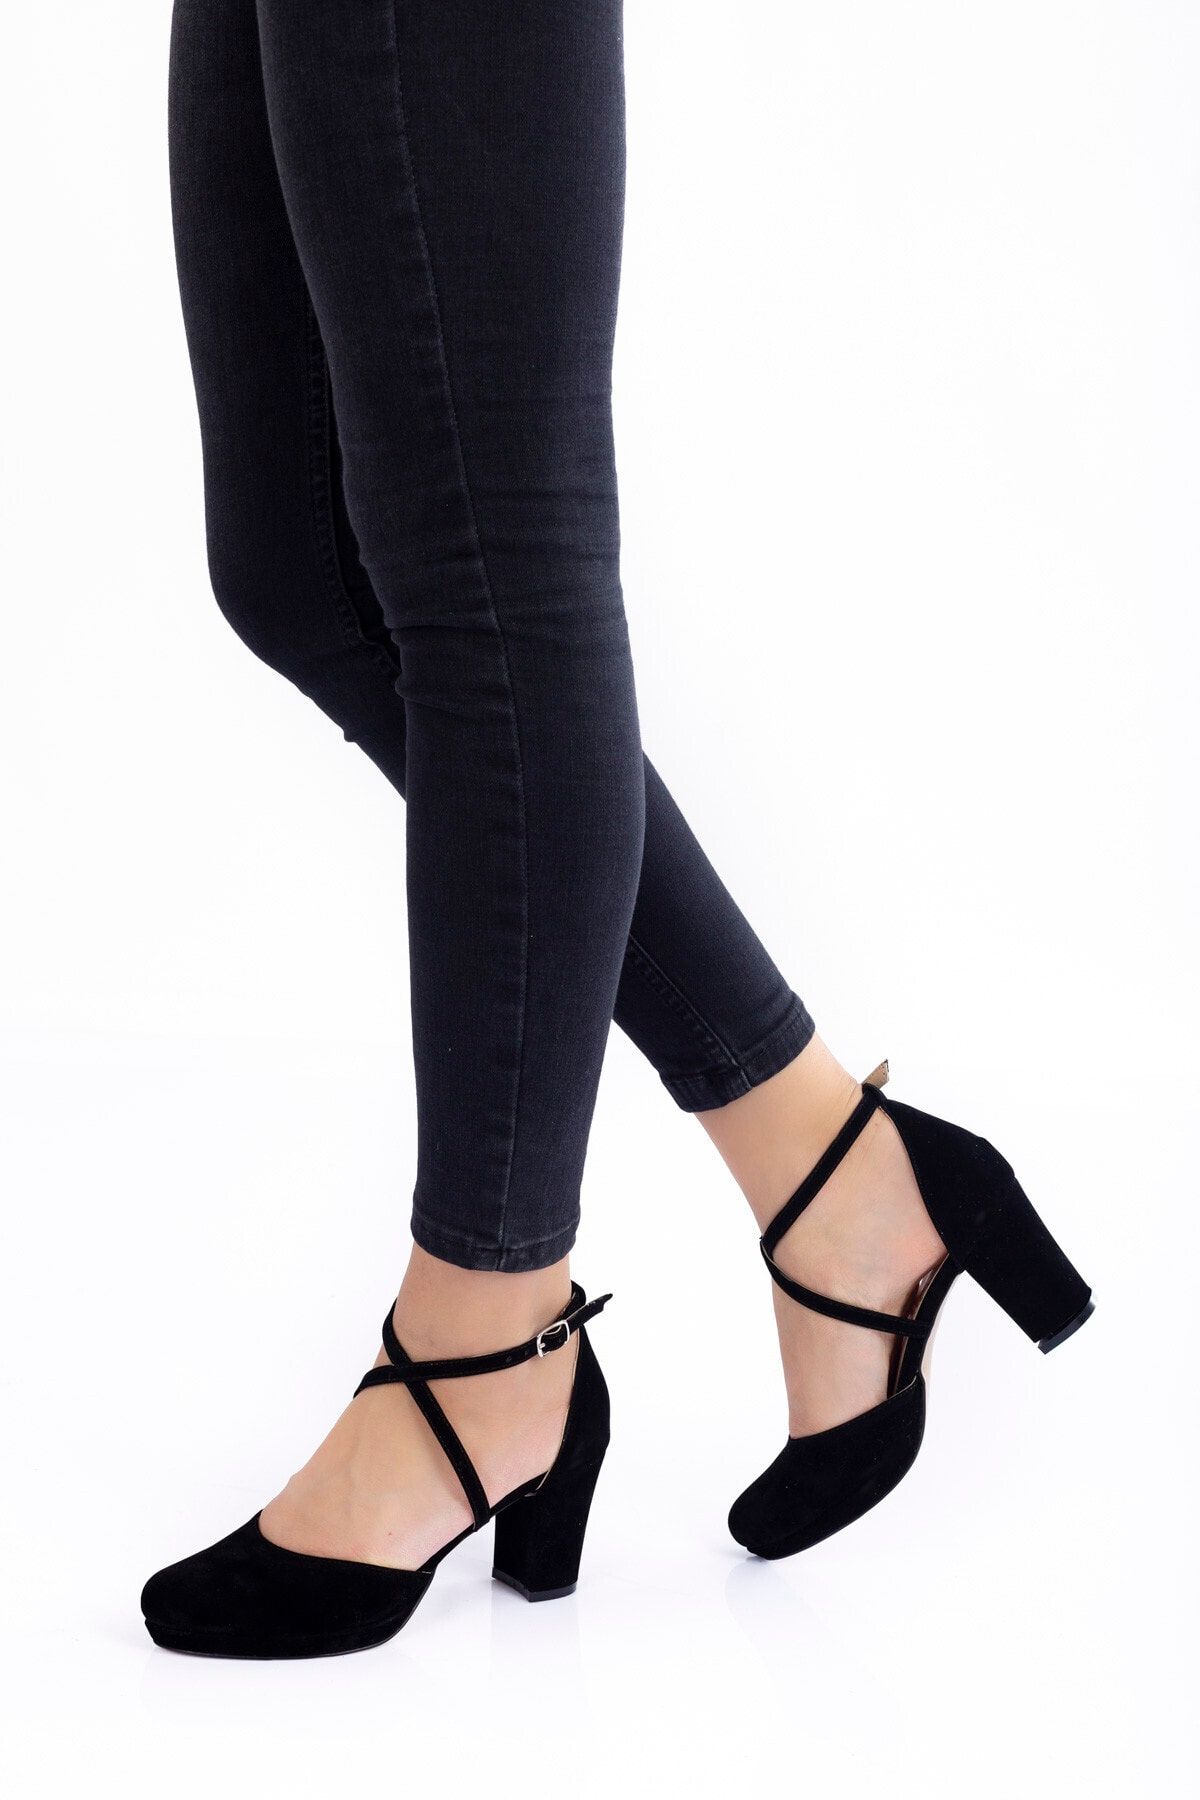 Çnr&Dvs Siyah Süet Topuklu Kadın Klasik Ayakkabı 910cnr